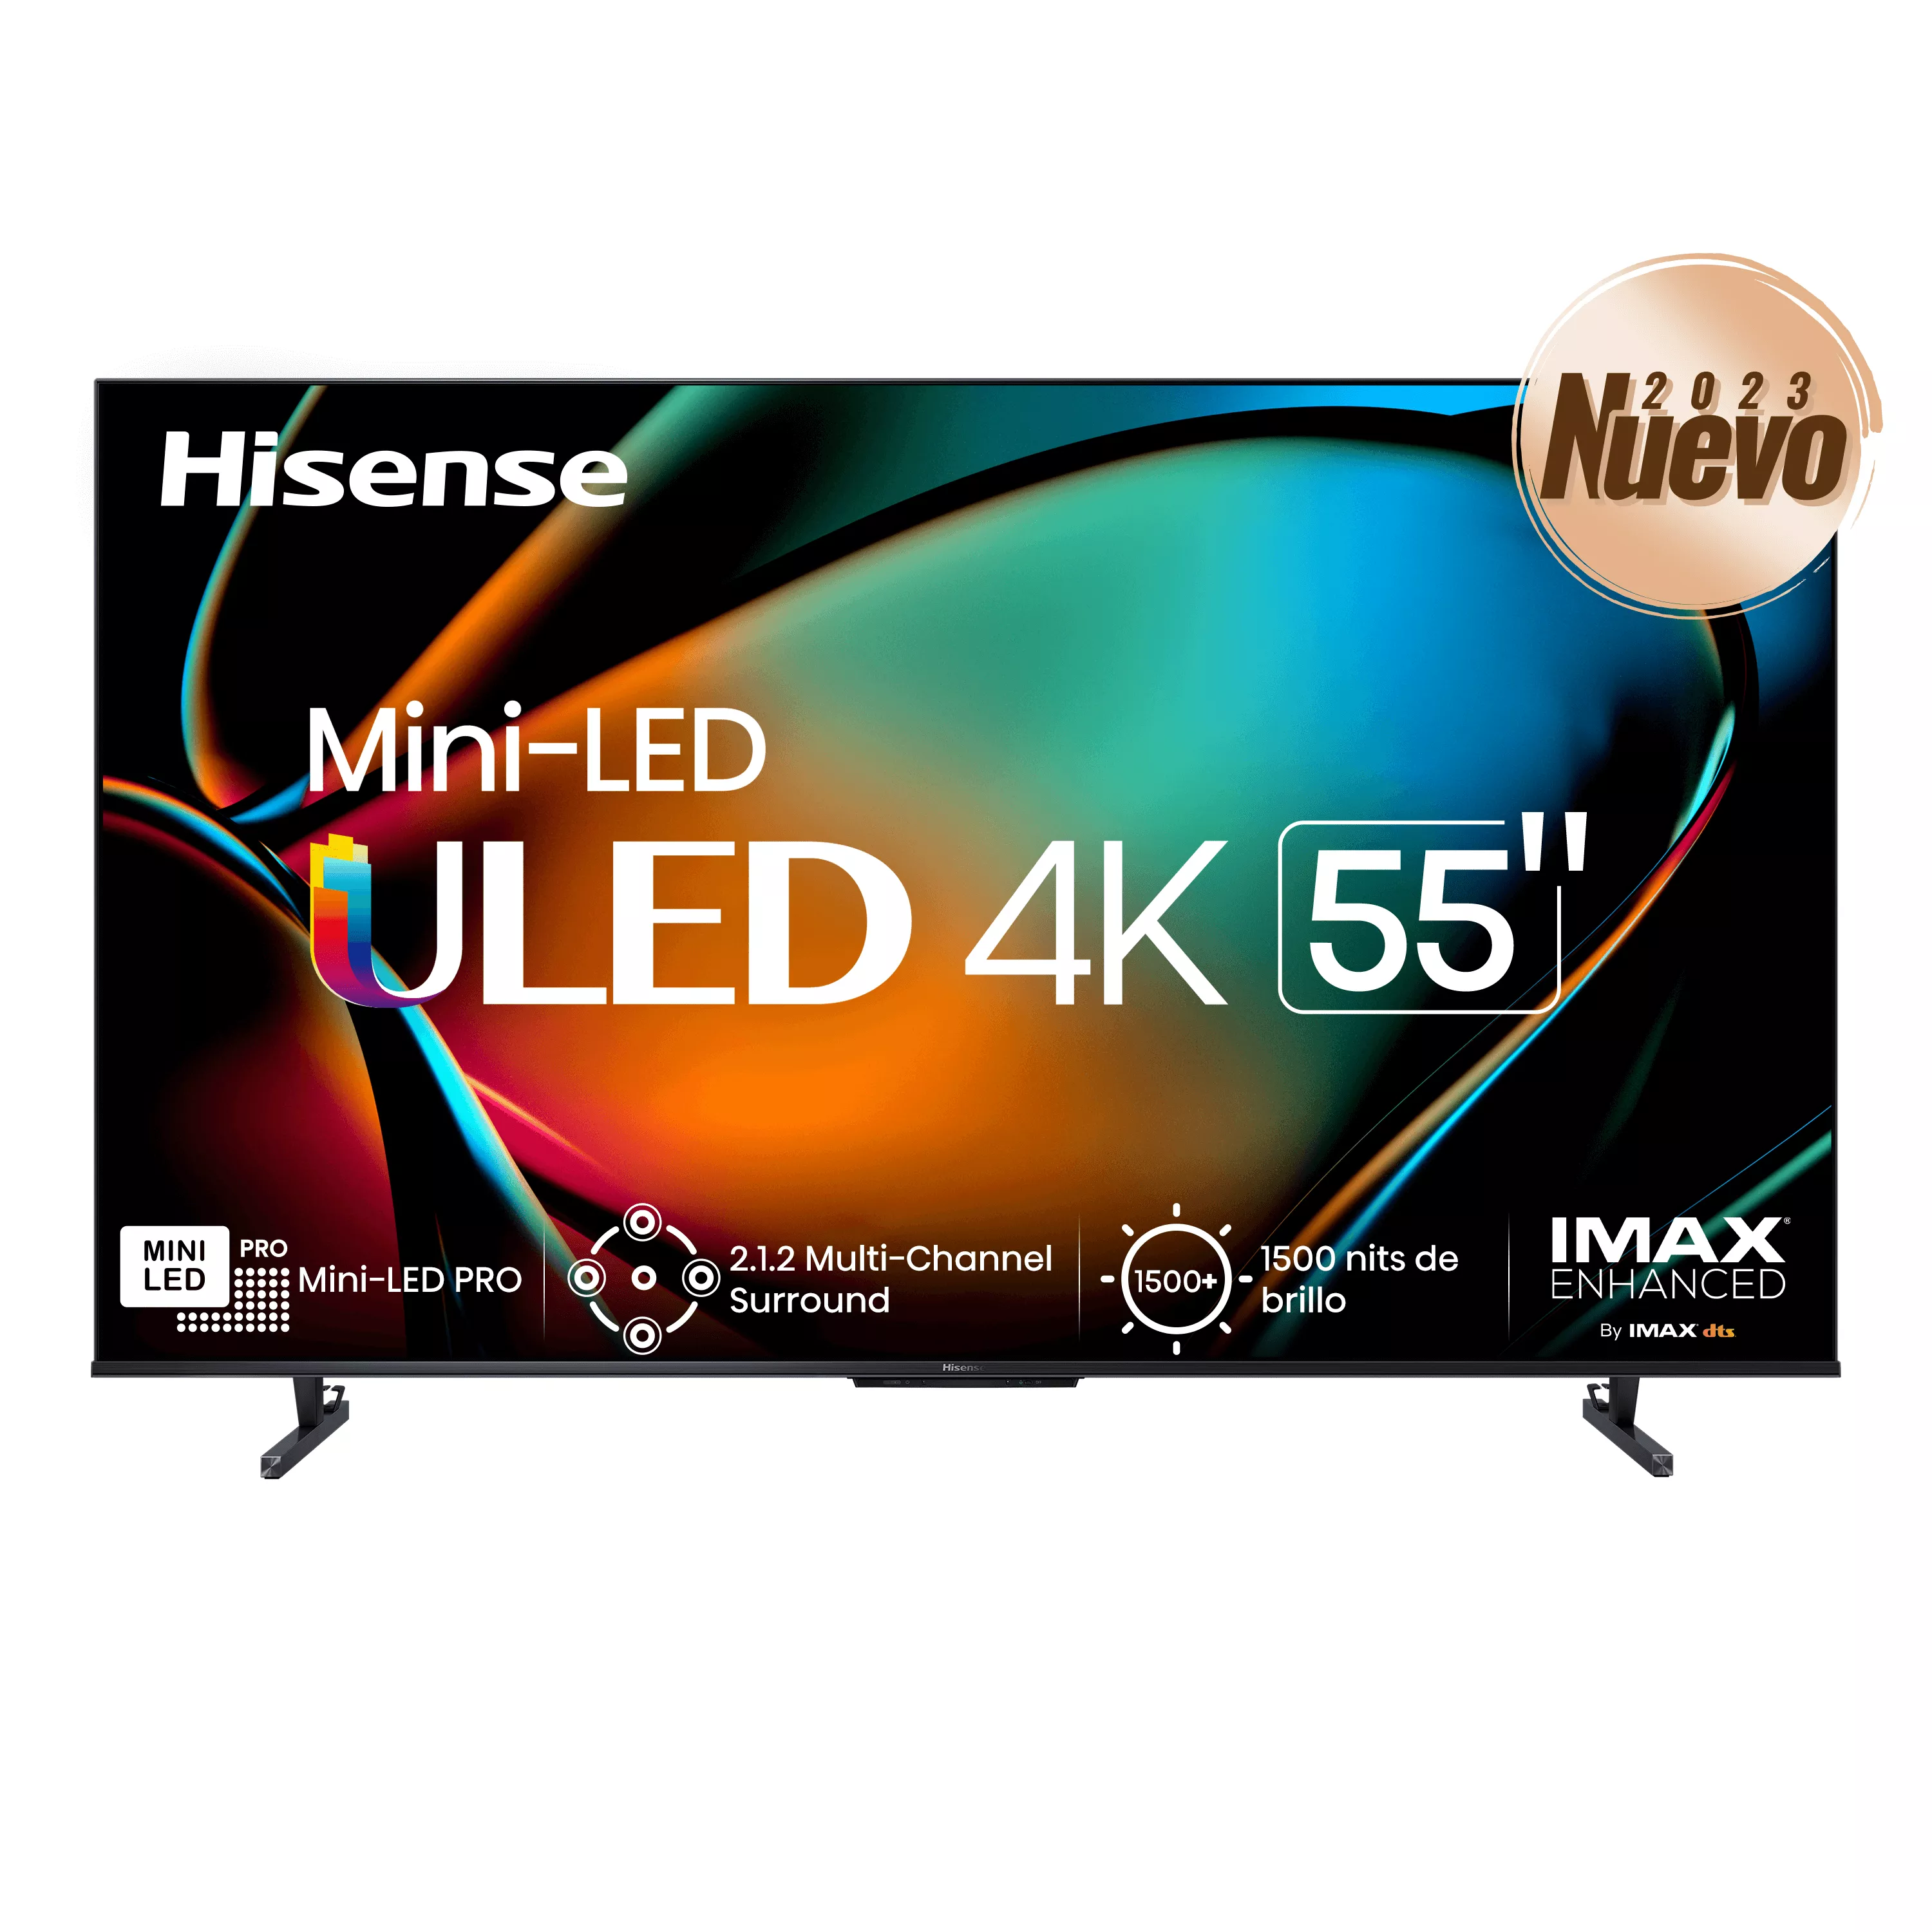 Mini LED U8K